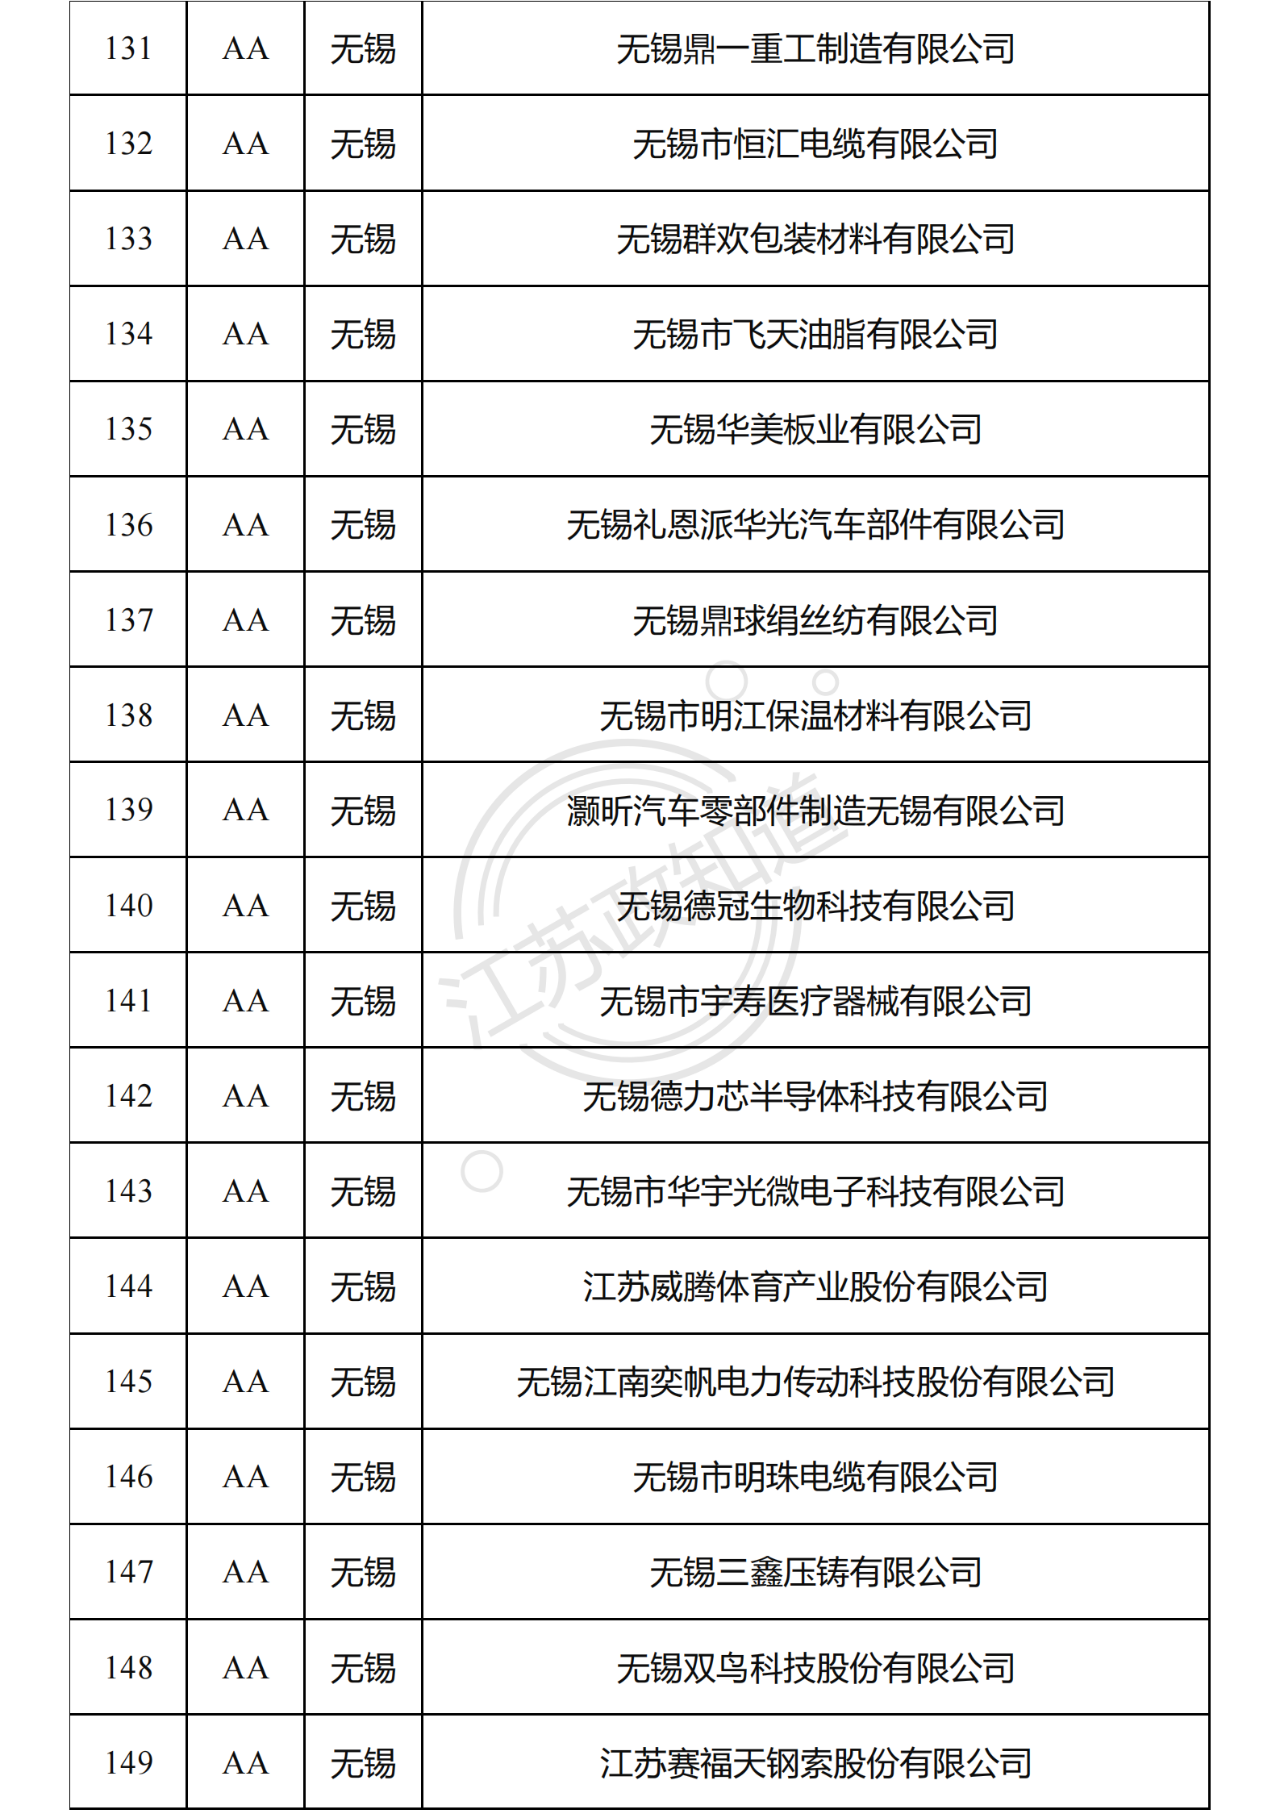 2022年度江苏省两化融合管理体系贯标试点企业培育对象拟认定名单9.png